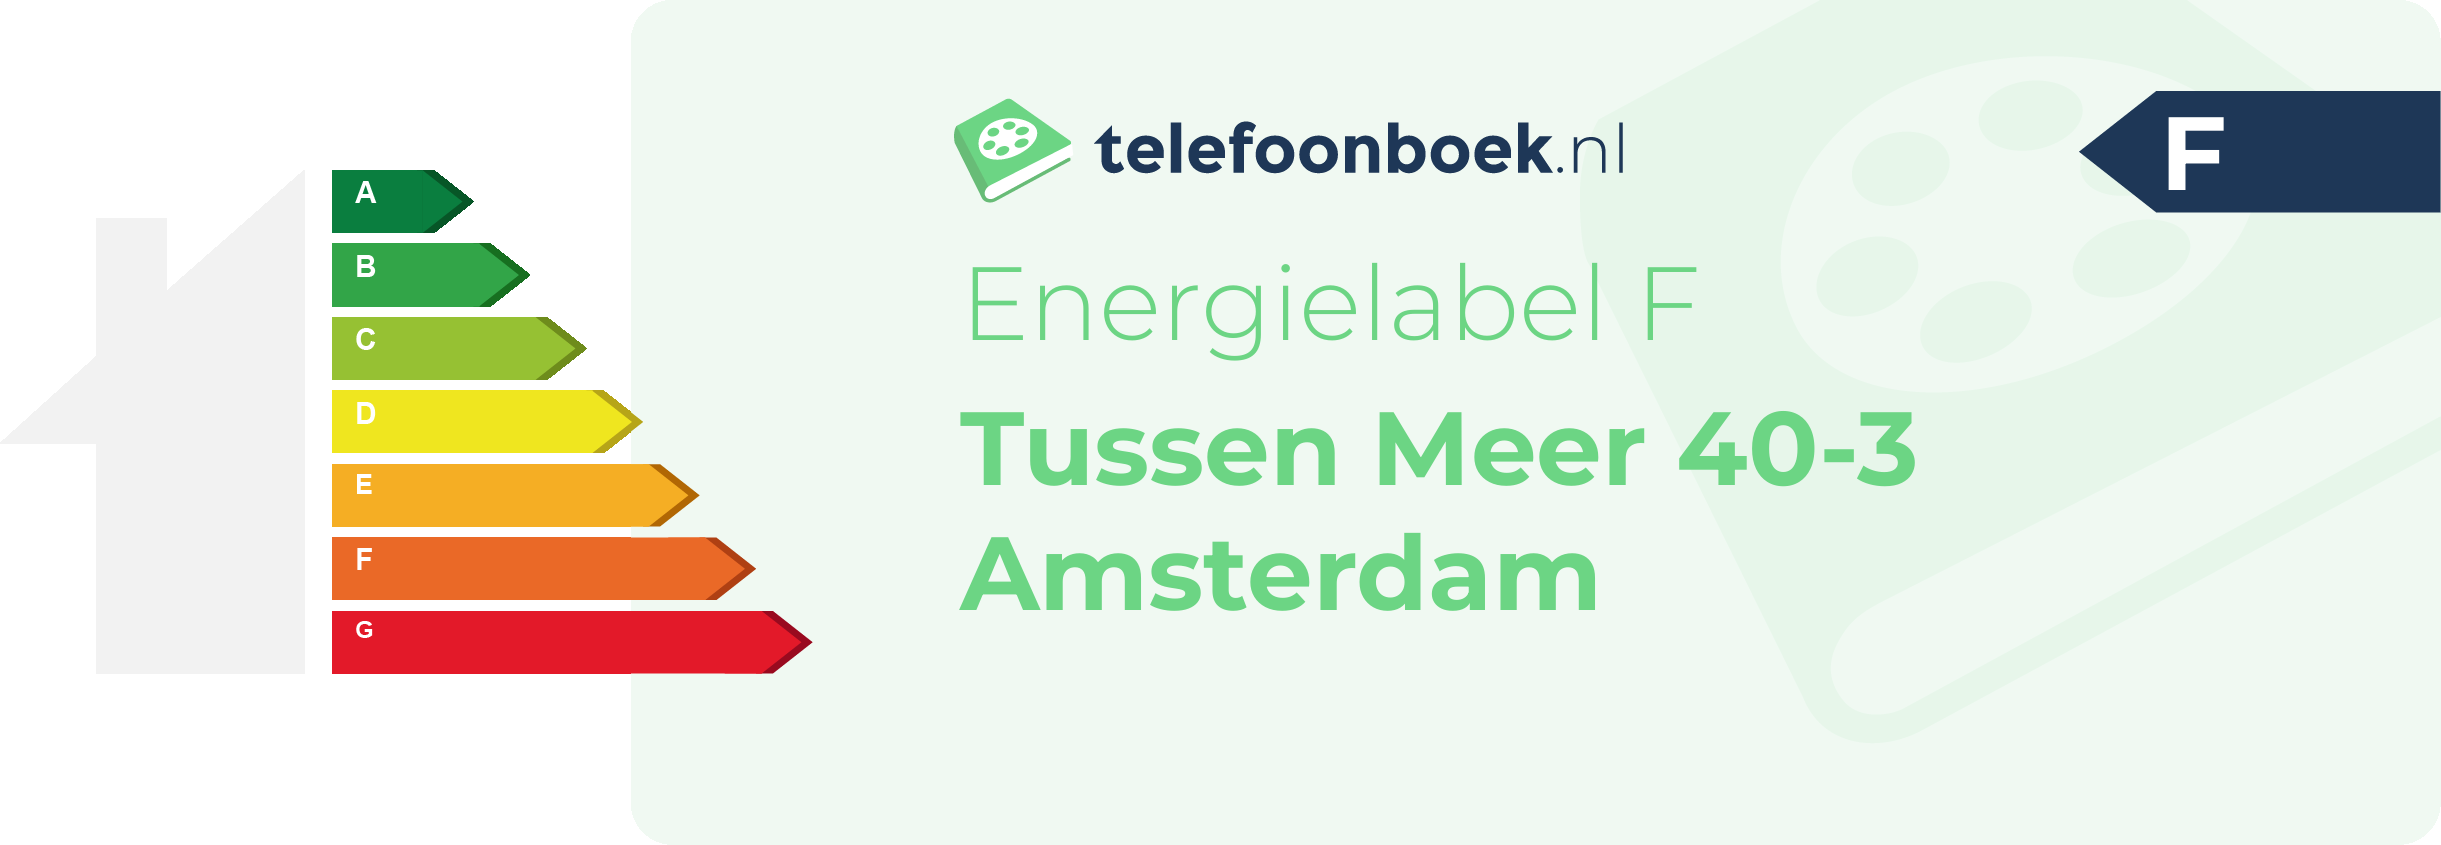 Energielabel Tussen Meer 40-3 Amsterdam